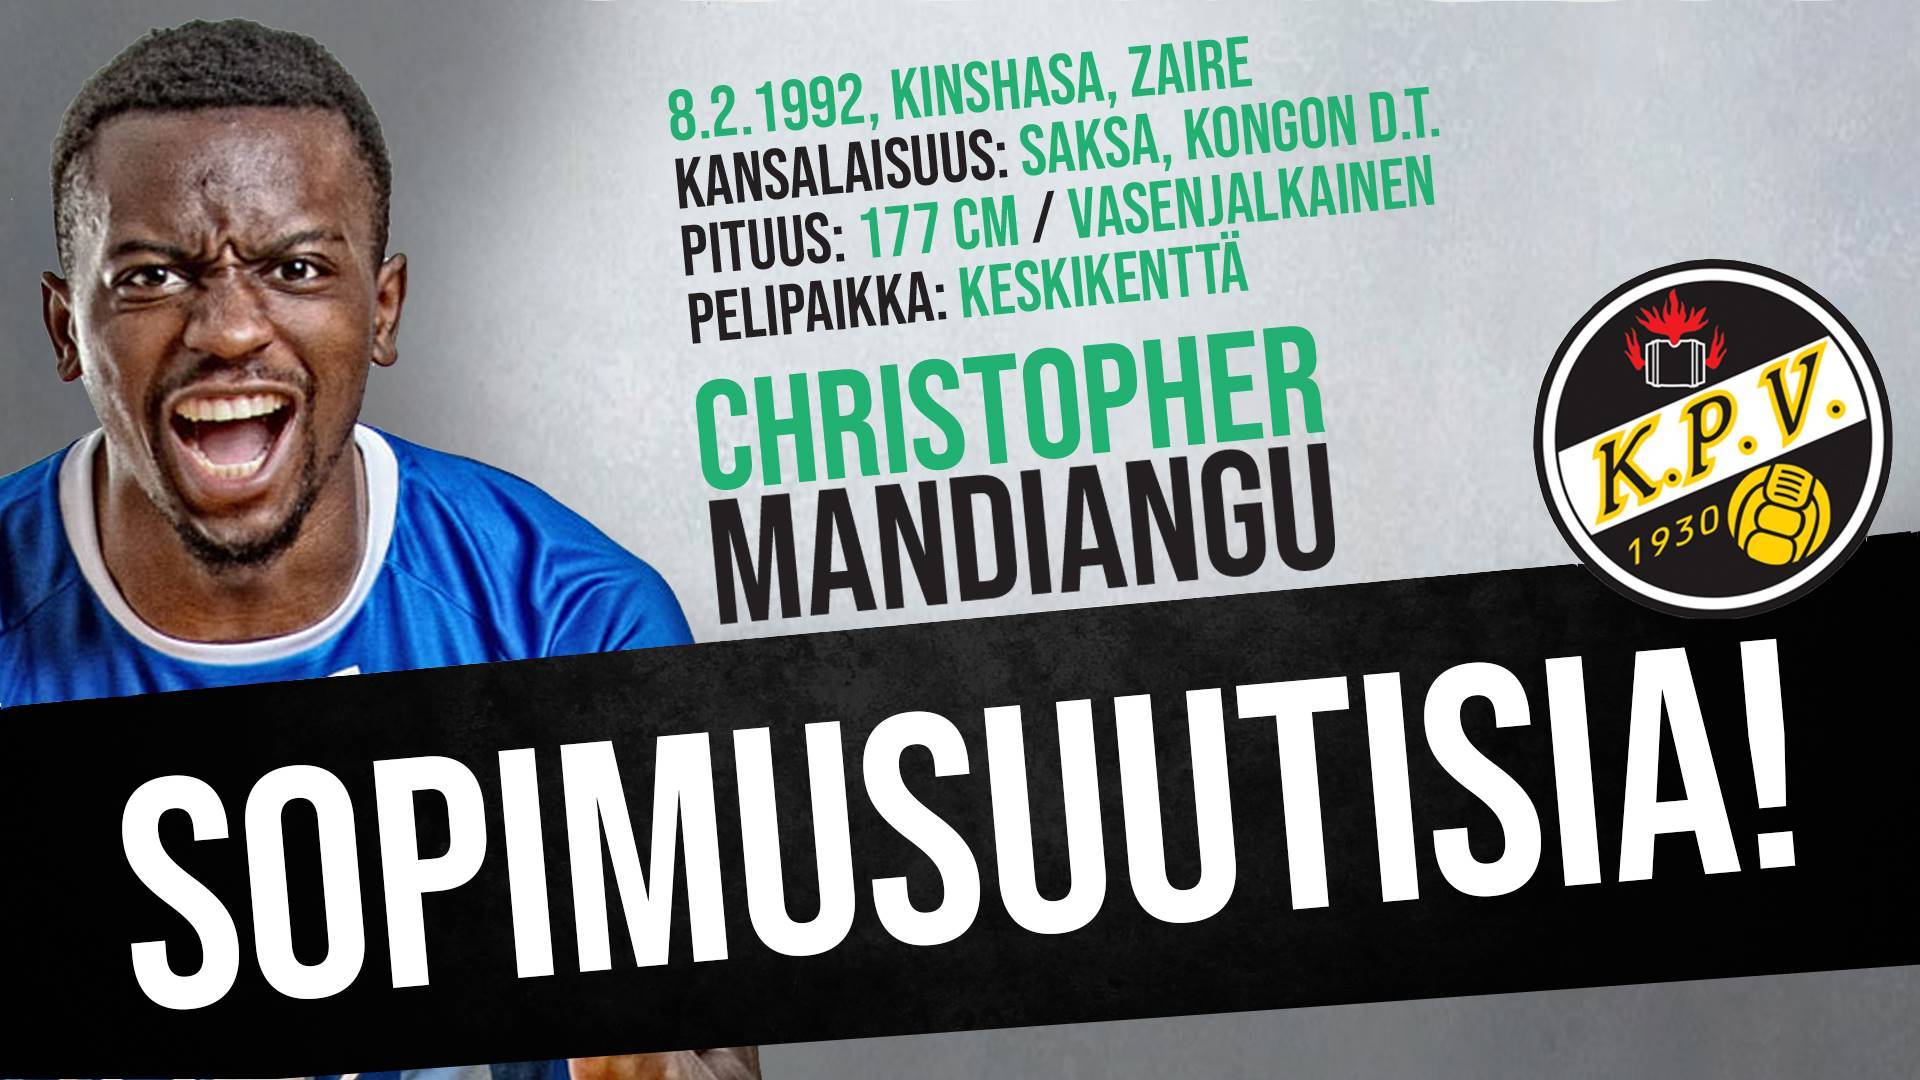 SOPIMUSUUTISIA: Christopher Mandiangu siirtyy KPV paitaan